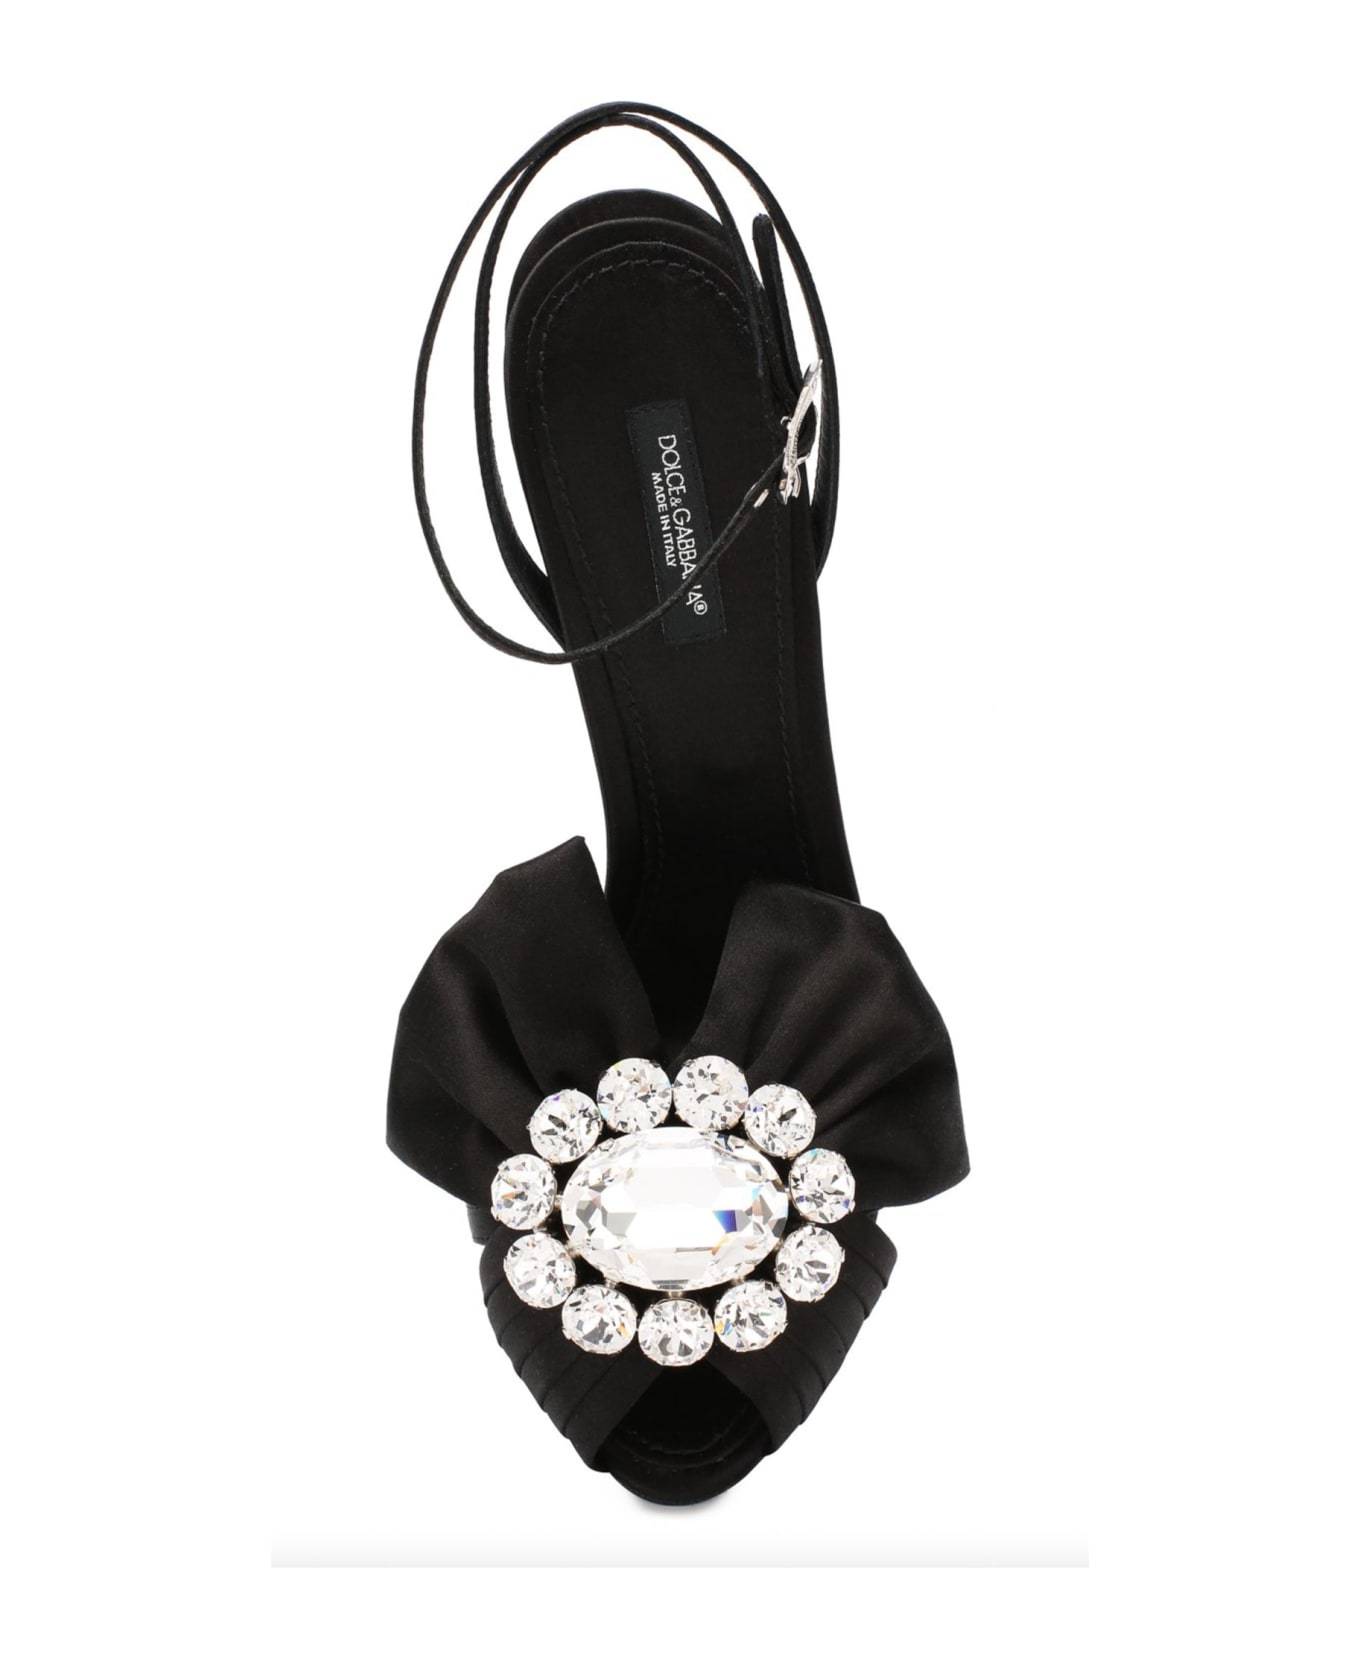 Dolce & Gabbana Bette Crystal Sandals - Black